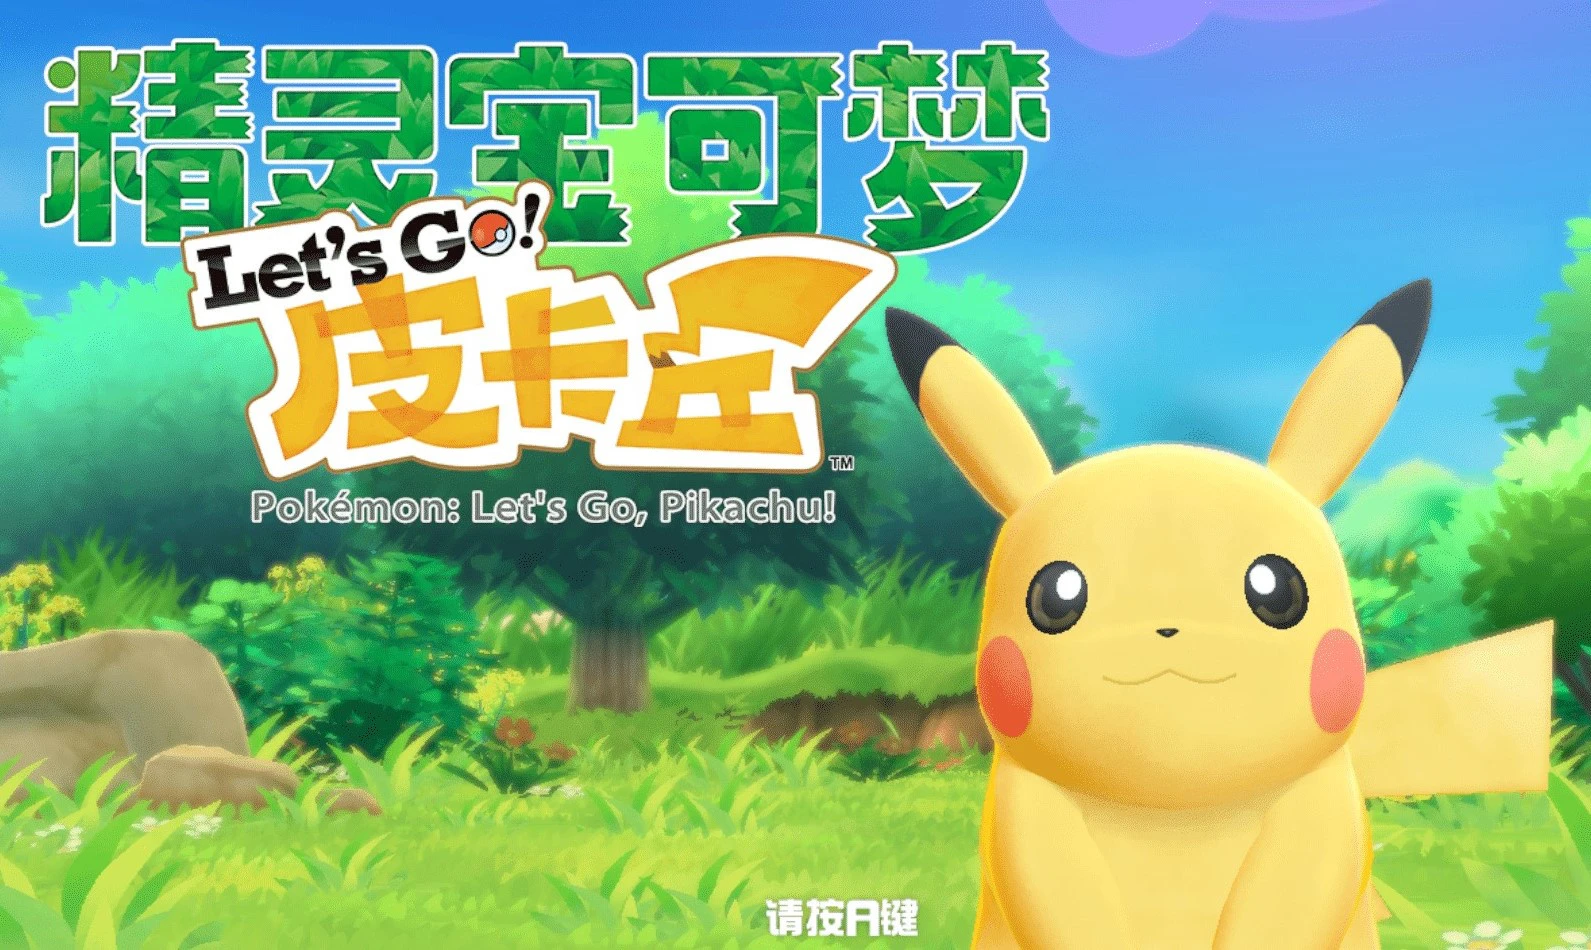 《精灵宝可梦Let's Go!皮卡丘伊布/Pokemon Let's Go! Pikach Eeve》v1.0.0Pikachu.Eevee_yuzuEA2077版|容量8.94GB|集成皮卡丘.伊布|官方简体中文|支持键盘.鼠标.手柄|赠存档修改器